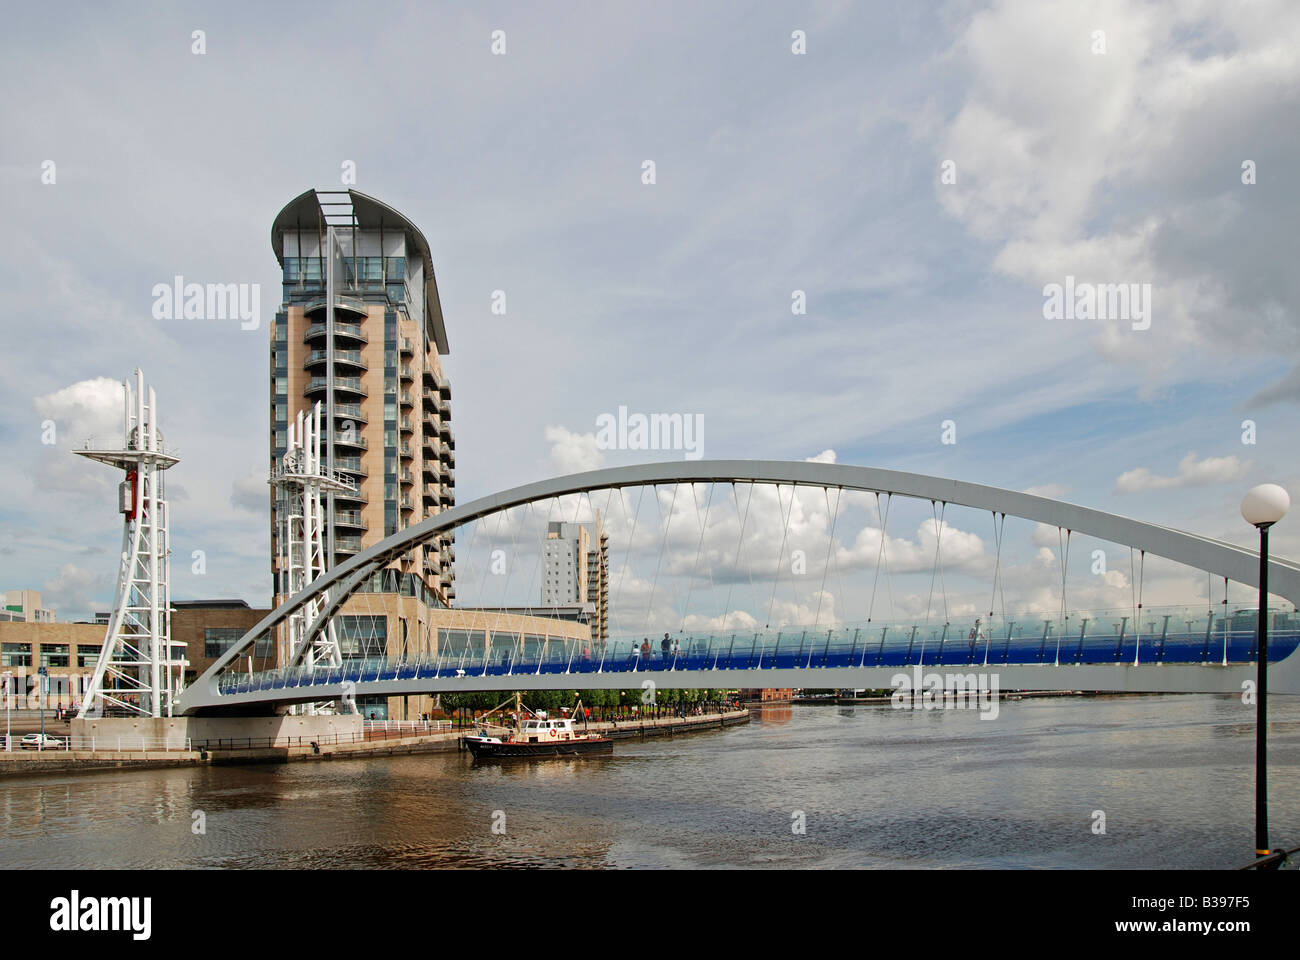 Le millenium bridge et Lowry Centre sur les quais de Salford, Manchester, Angleterre, Royaume-Uni Banque D'Images